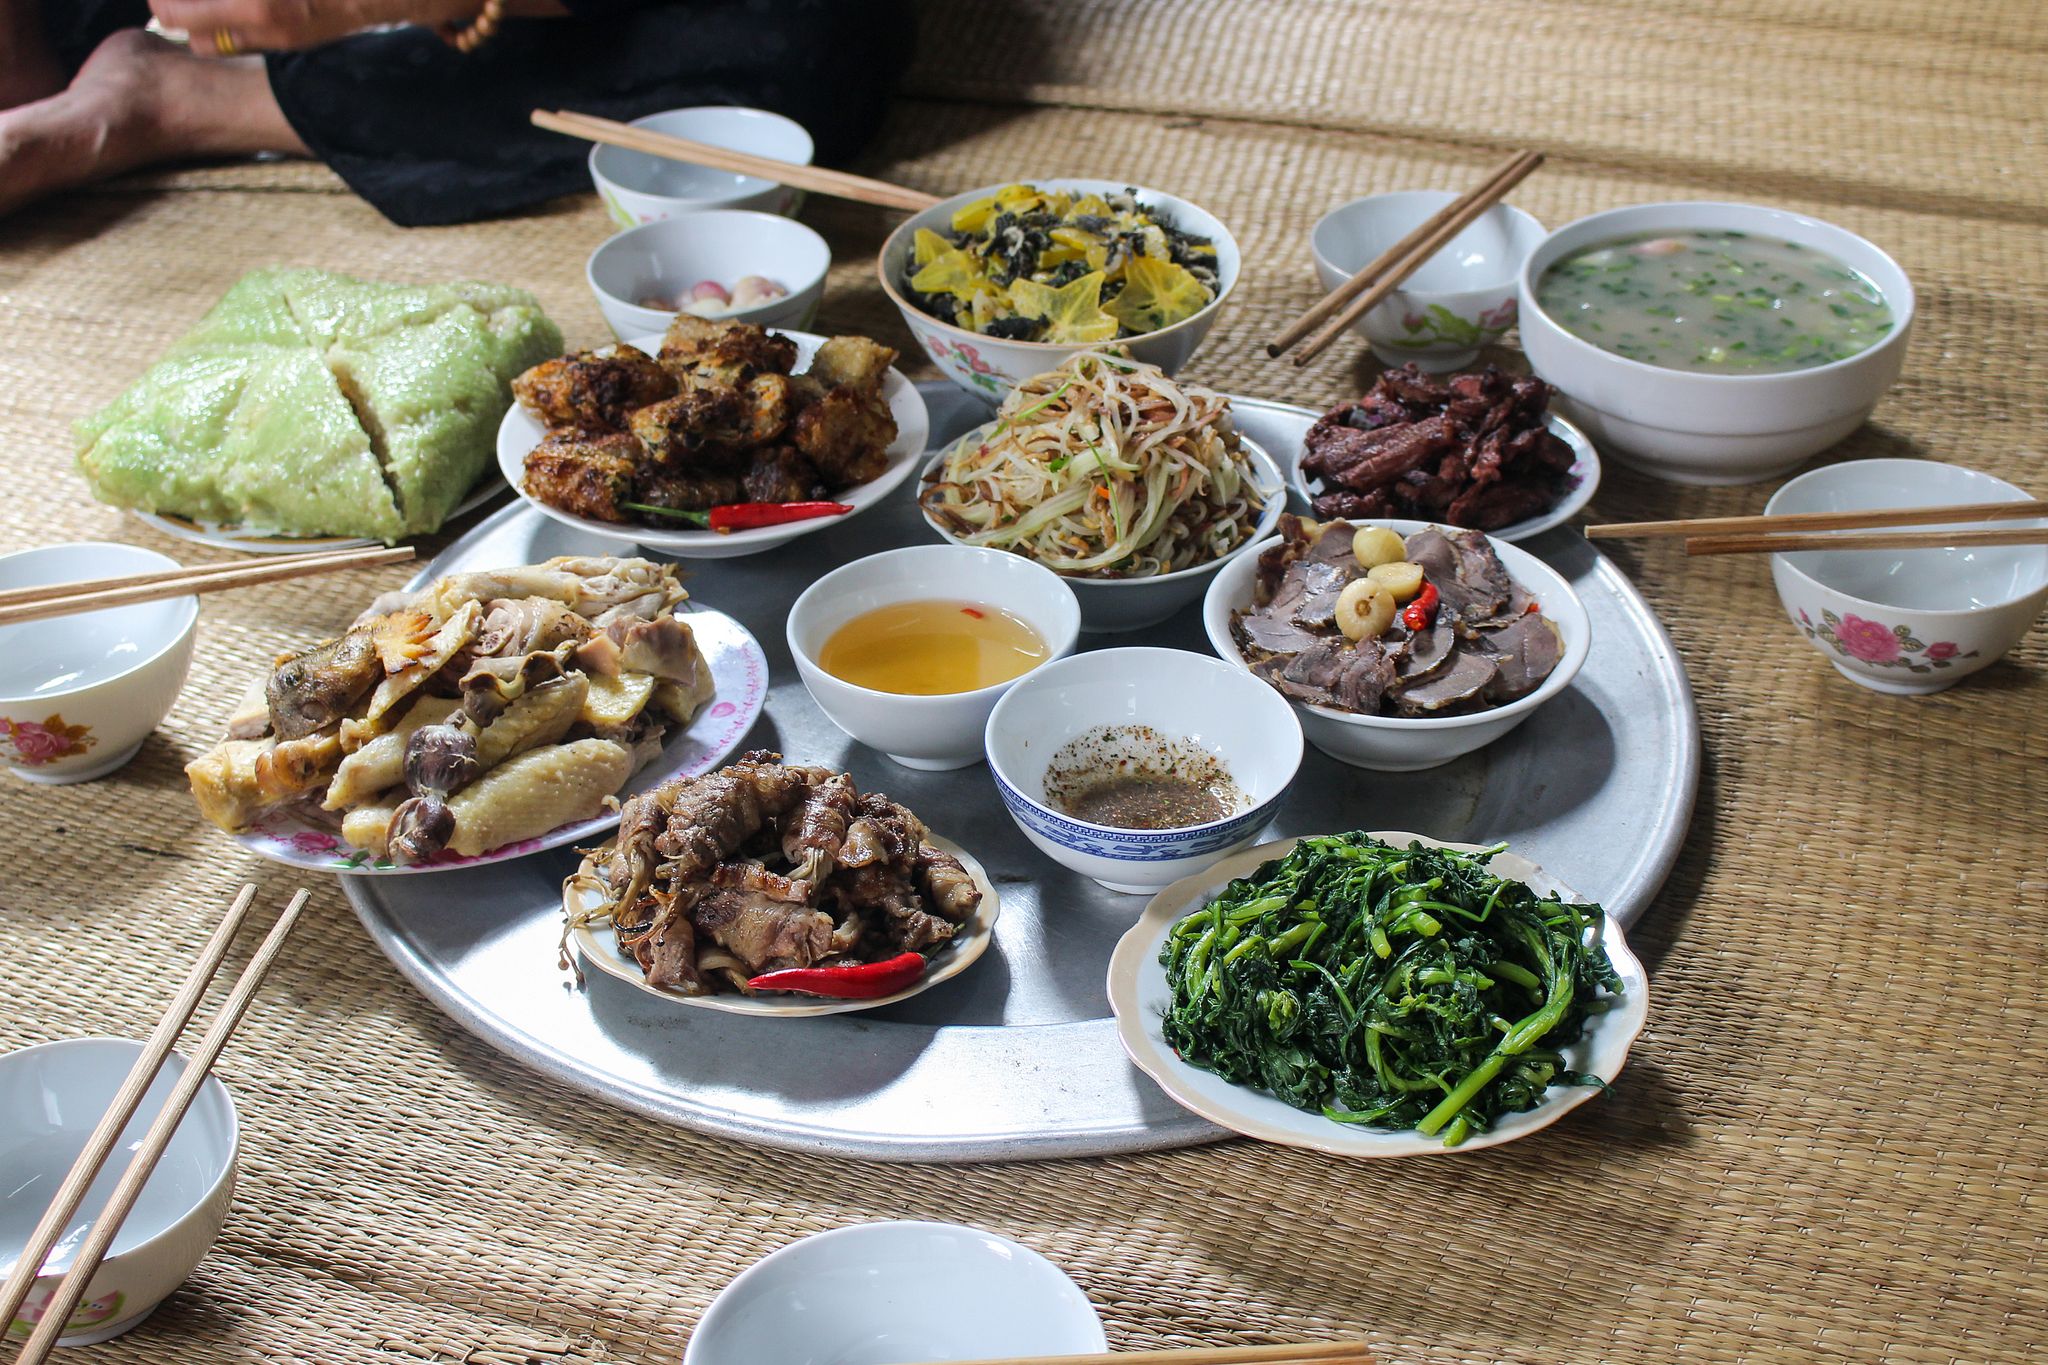 Cái mâm là vật dụng không thể thiếu trong bữa ăn của người Việt. Nó không chỉ đẹp mắt, mà còn giúp mang đến không gian ấm cúng cho gia đình. Xem những hình ảnh liên quan đến cái mâm Việt, chắc chắn sẽ mang đến cho bạn sự thích thú khi khám phá vẻ đẹp mang tính truyền thống của Việt Nam.